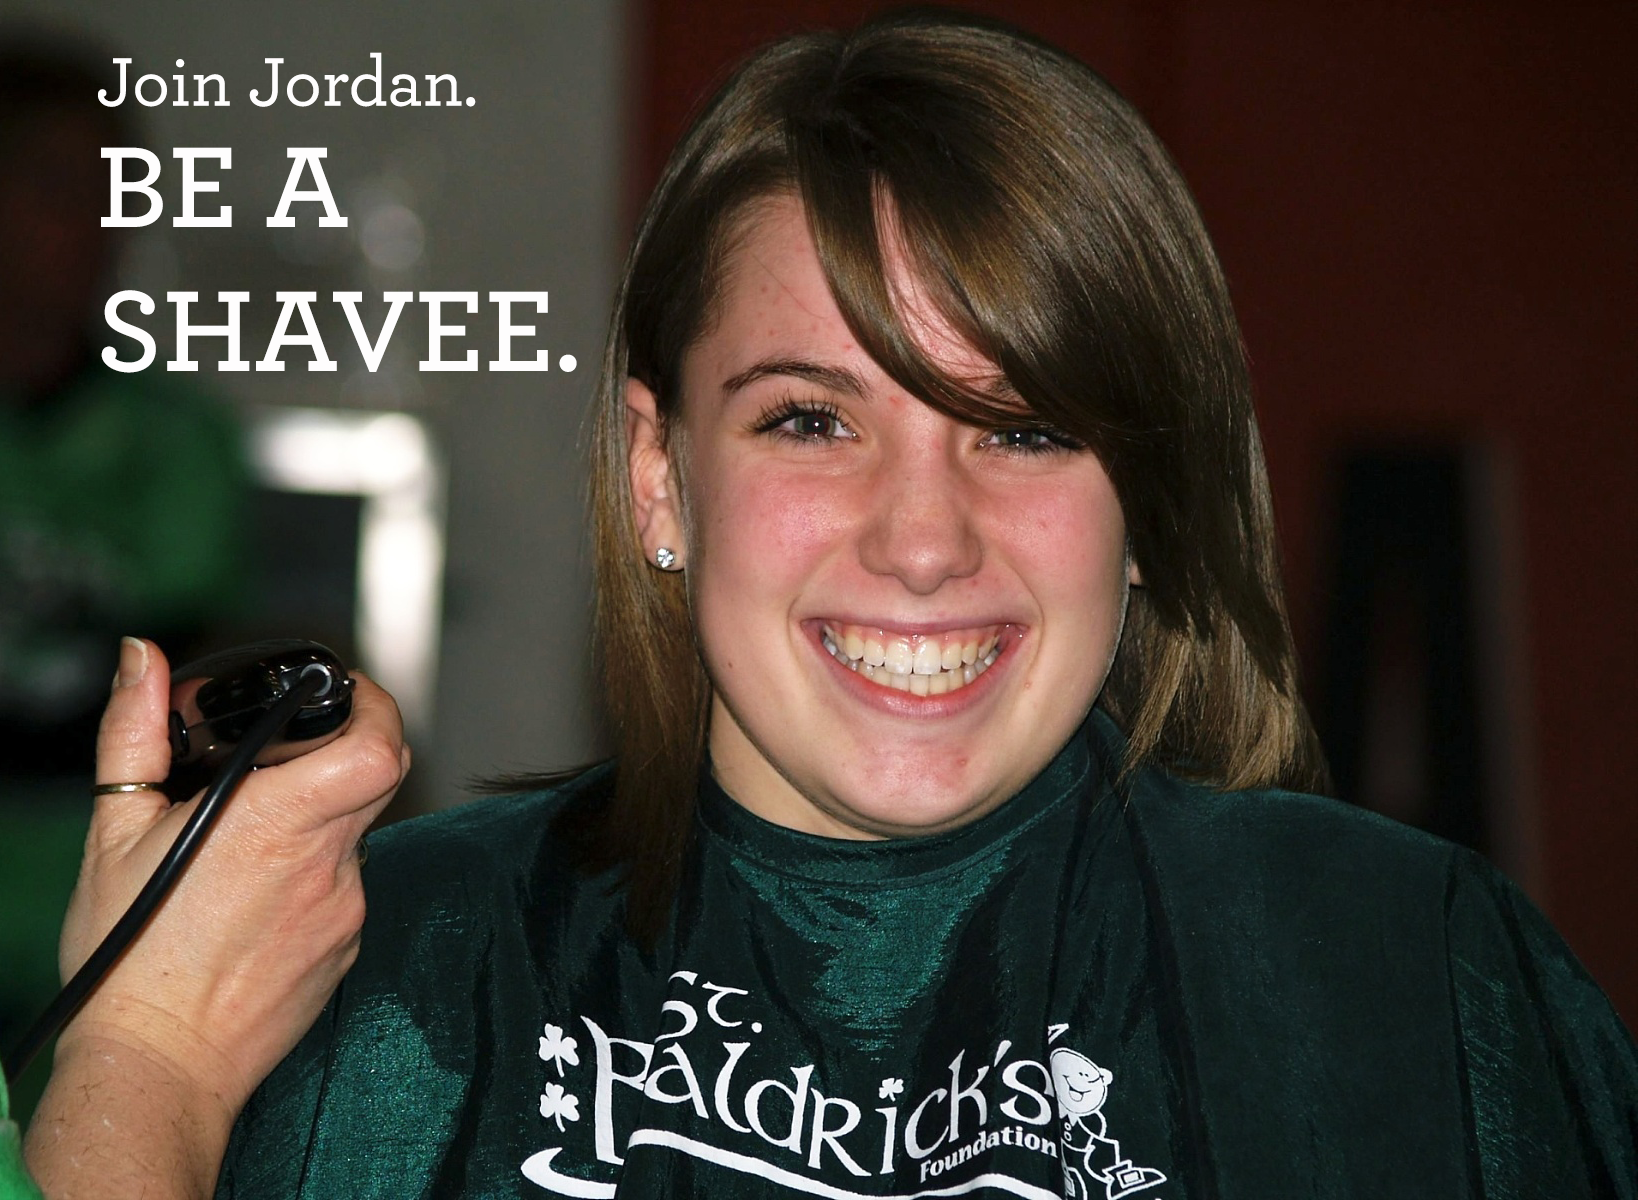 Jordan shaving in 2010